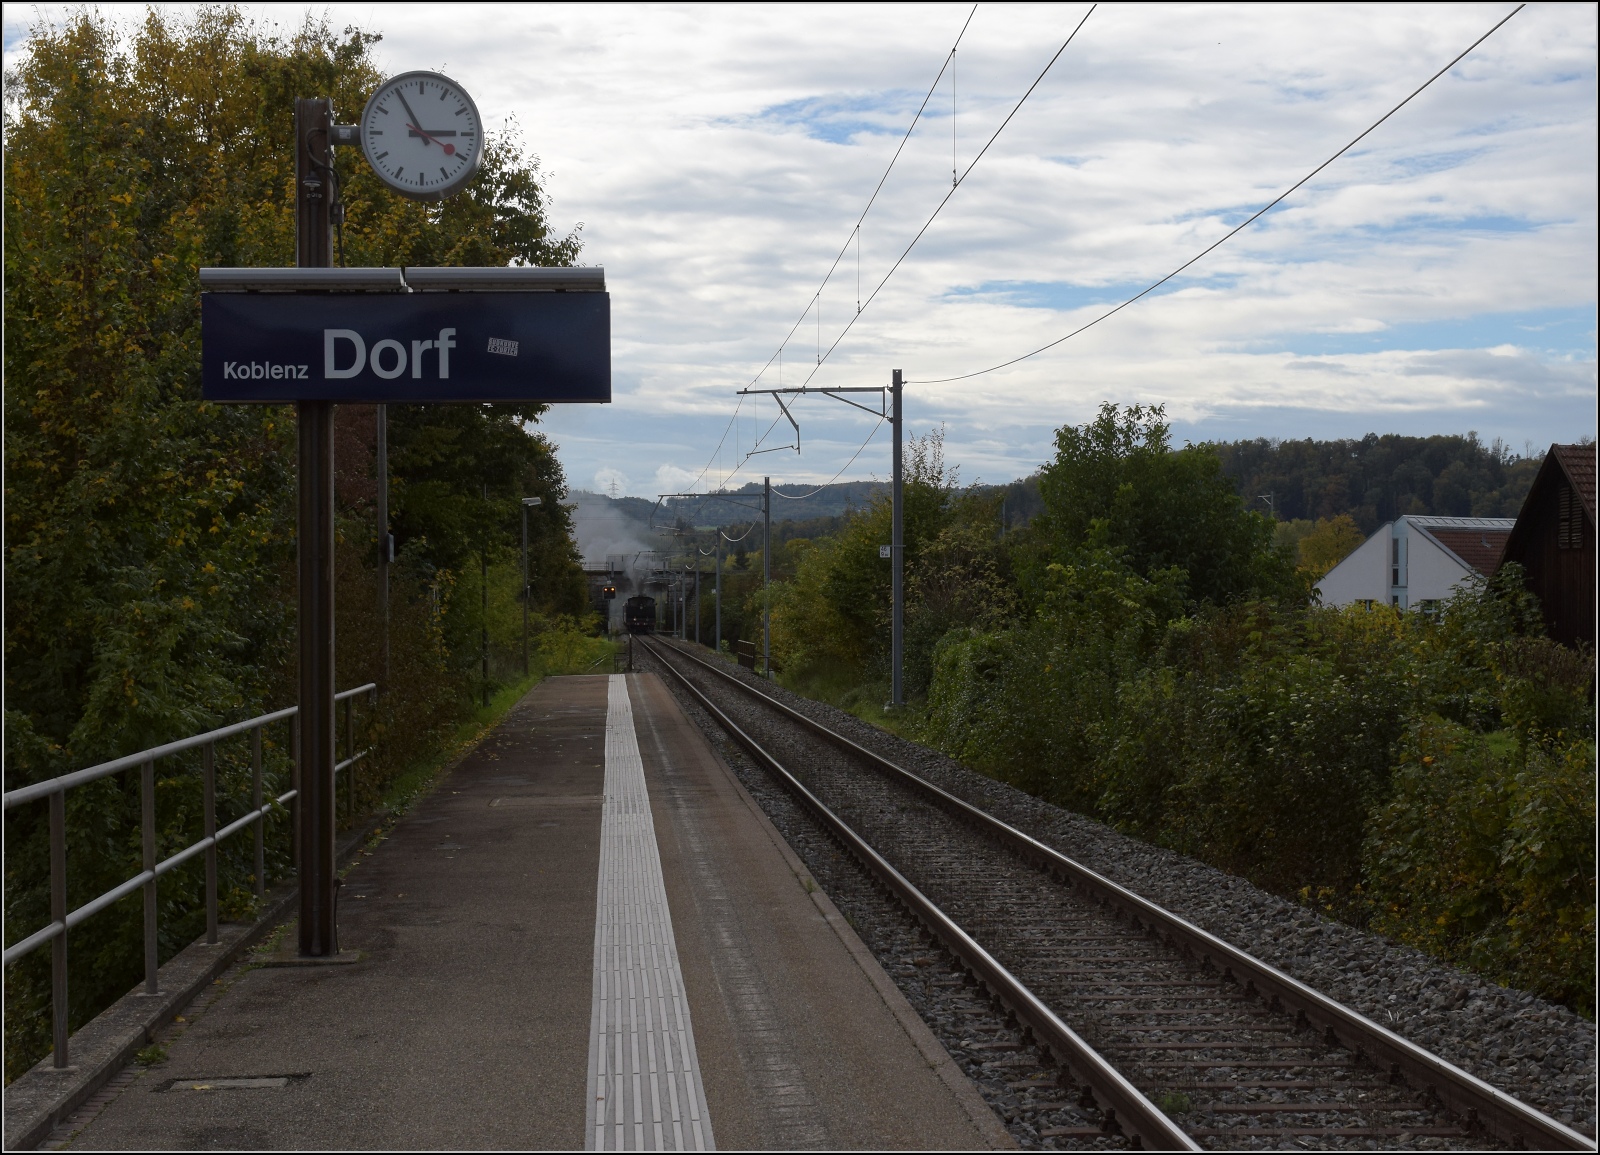 Den Schweizer Bahnen zum 175. Geburtstag.

Dampftage Koblenz, SCB Ed 2x 2/2 196 bringt diesmal den Sonderzug alleine nach Bad Zurzach. Koblenz Dorf, Oktober 2022.